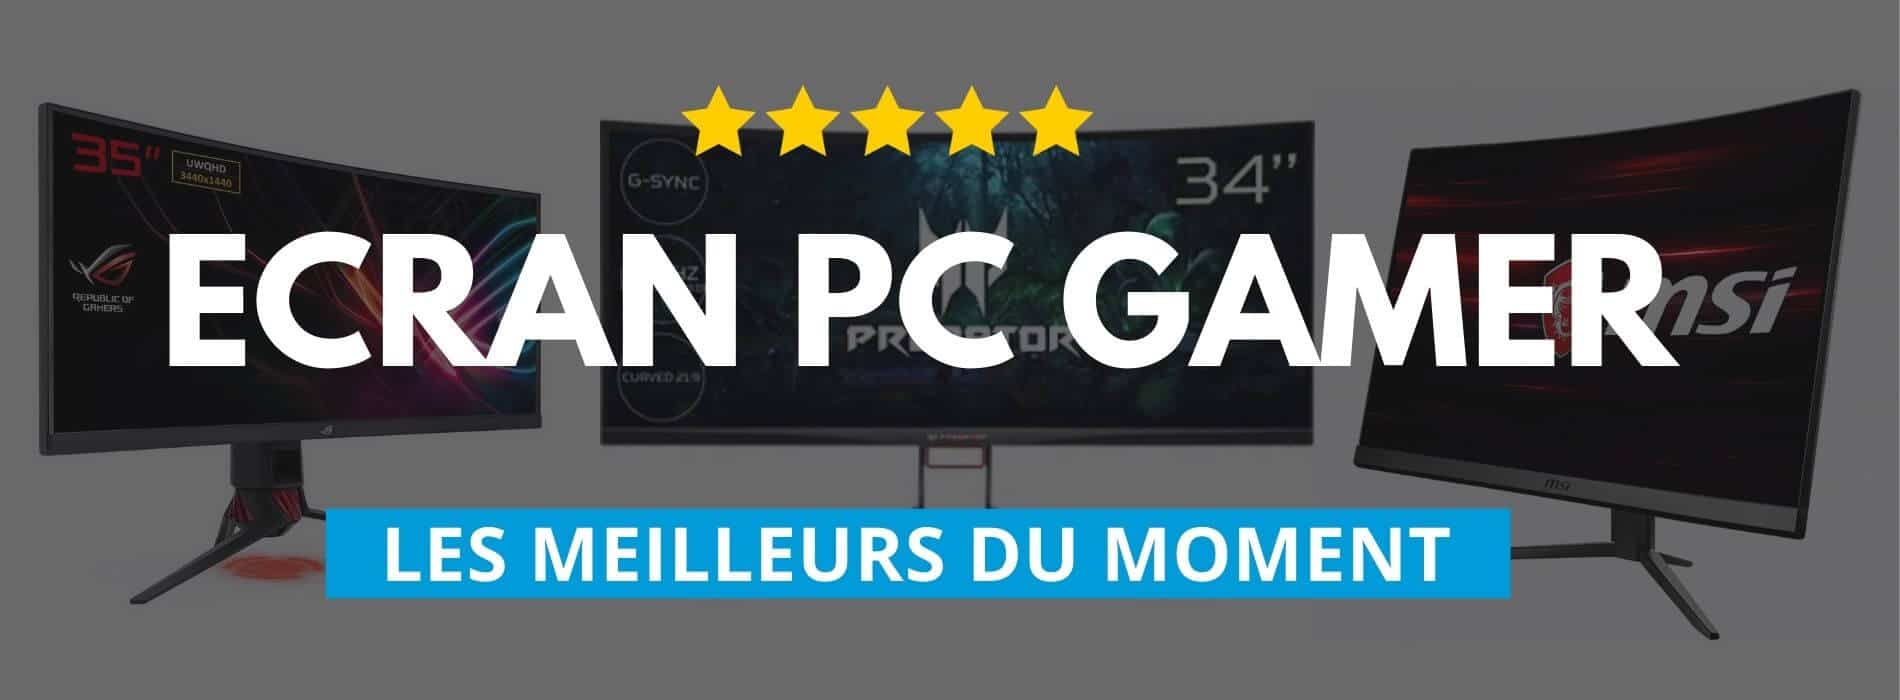 Ecran PC gamer - Achat Écran PC au meilleur prix